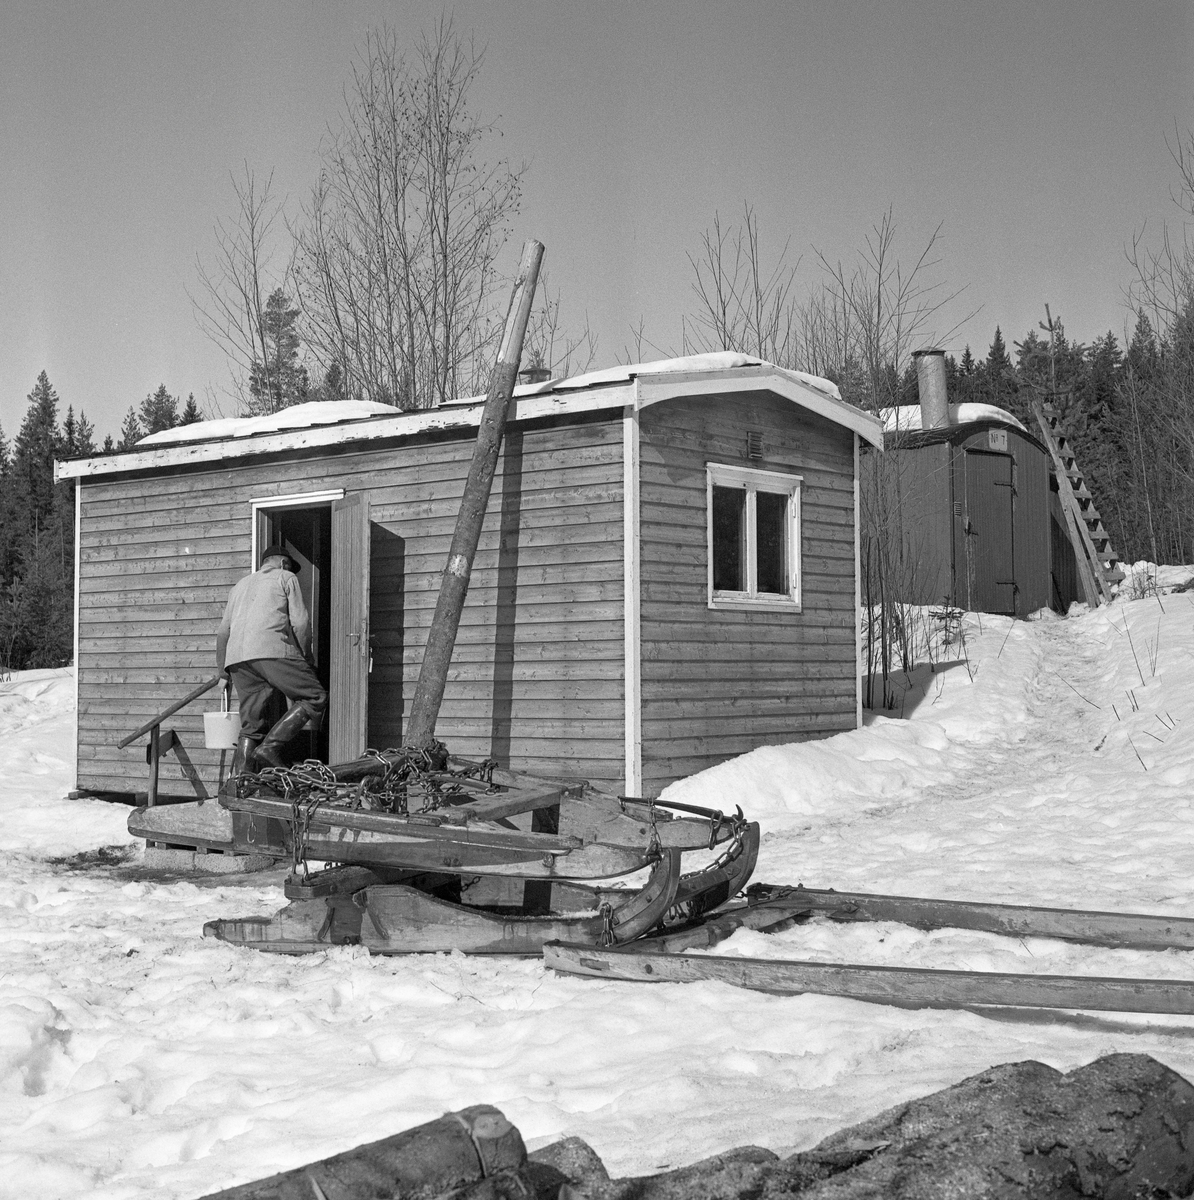 Tømmerslede på snødekt mark framfor flyttbar koiebrakke og stall i Stavåsen i Elverum, Hedmark. Fotografiet blew tatt vinteren 1971, da Jørgen Larsen fra Hernes kjørte tømmer i dette området. Sleden var en såkalt «rustning» (også kalt «reitdoning» eller «bukk og geit»), altså en todelt sledetype. Når det var lass på rustningen hang baksleden («geita») bak forsleden («bukken») i en Y-formet kjetting («trossa»). Den todelte sledeløsningen og den dreibare «banken» (tverrtreet som bar lasset) på forsleden gjorde rustningen til et smidig transportredskap på svingete og staupete veger i skogsterrenget. Når doningen skulle kjøres «tomreipes» tilbake mot hogstteigene hvor det var mer tømmer å hente, var det vanlig å gjøre som Jørgen Larsen hadde gjort her, nemlig å legge geita oppå bukken med en høysekk som sitteunderlag på den øverste sleden. Akkurat da dette fotografiet ble tatt var Jørgen Larsen på veg inn i den brakka han var innkvartert i mens han kjørte tømmer i dette området. Det dreide seg om en rektangulær bindingsverkskonstruksjon med dør på langveggen og vindu i gavlveggen. I bakgrunnen (ovenfor) ser vi også en del av stallbrakka. Begge disse husværene var flyttbare i den forstand at de hadde hjul og kunne trekkes bak en traktor til et annet driftssted på skogsbilveger i barmarkssesongen.